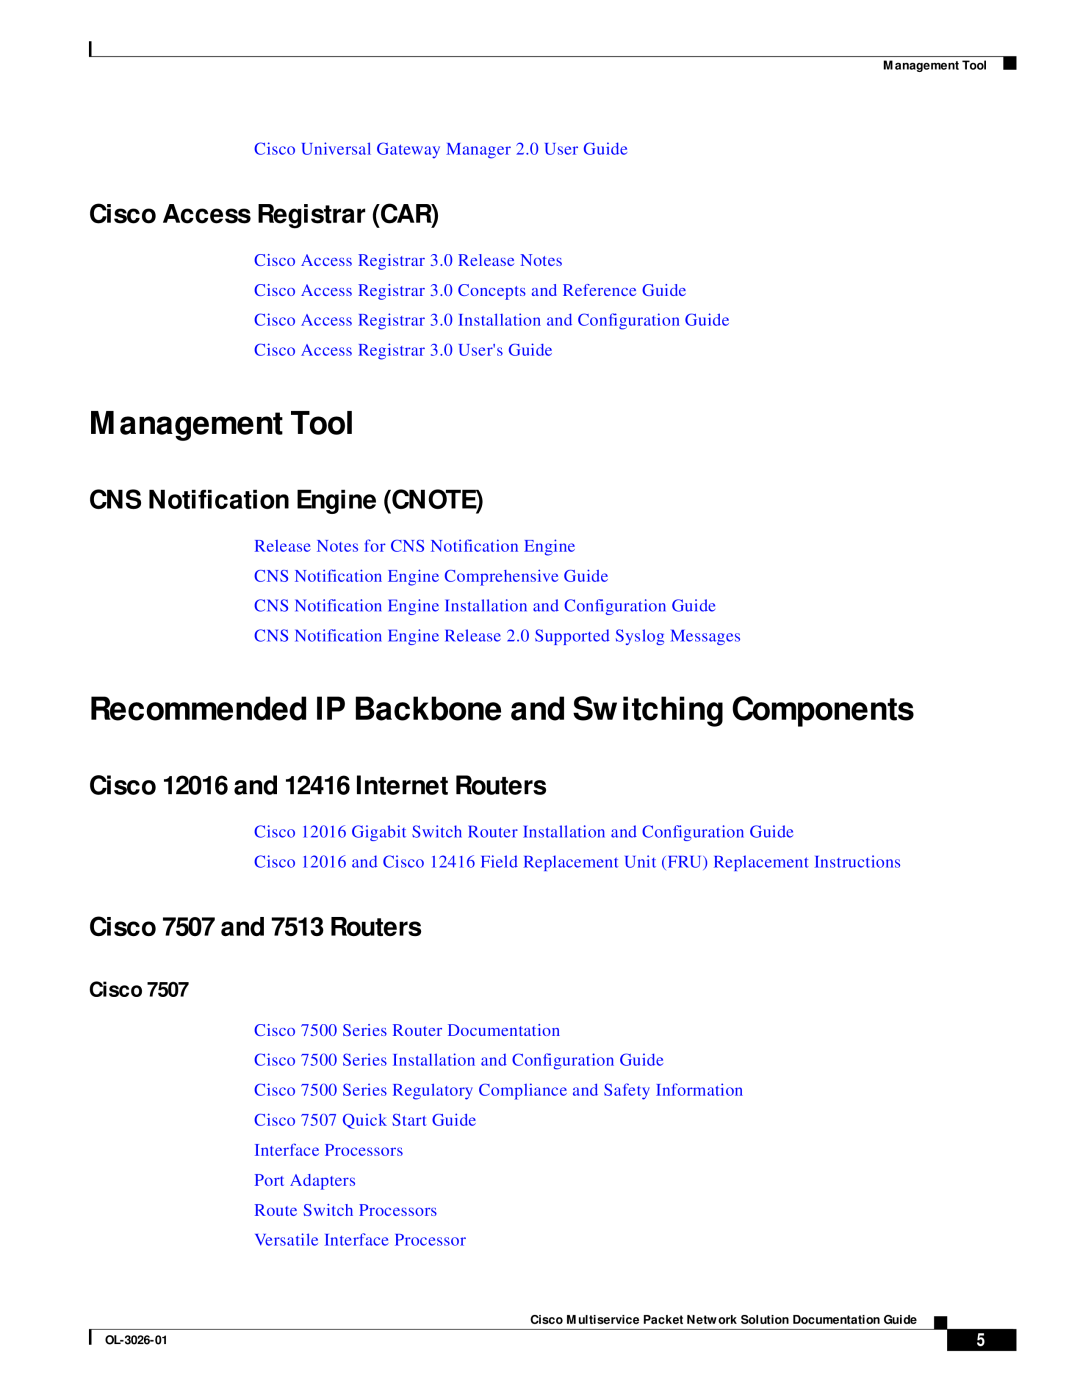 Cisco Systems OL-3026-01 manual Management Tool, Cisco Access Registrar CAR, CNS Notification Engine CNOTE 